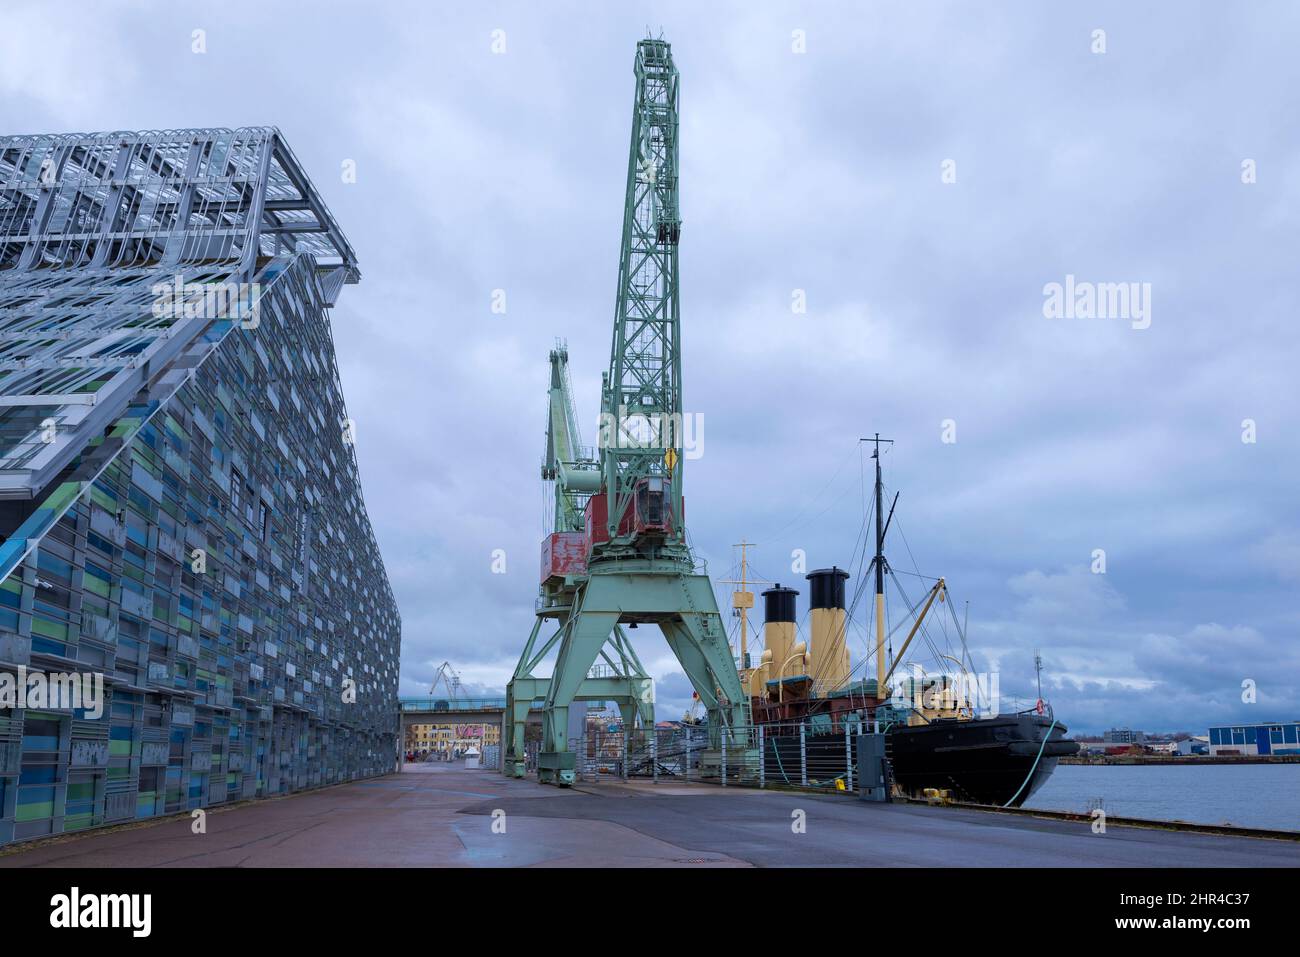 KOTKA, FINLAND - NOVEMBER 02, 2019: Cargo crane at the port of Vellamo. Kotka, Finland Stock Photo